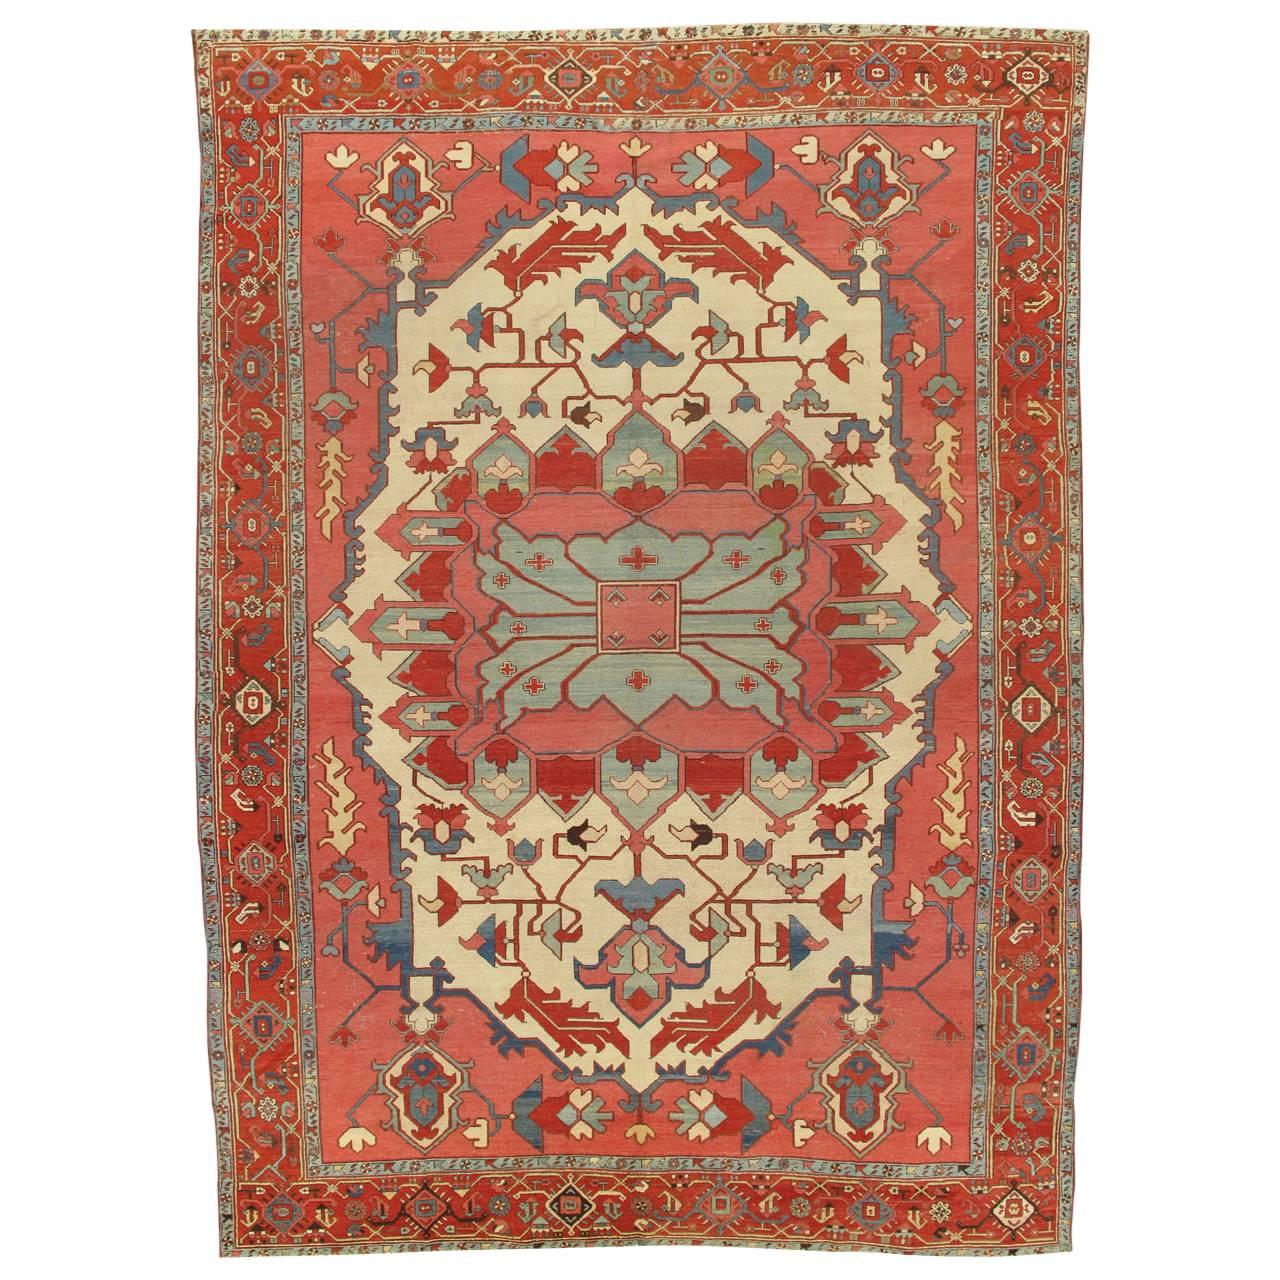 Tapis persan antique Serapi, tapis fait à la main ivoire, bleu clair, rouge rouille